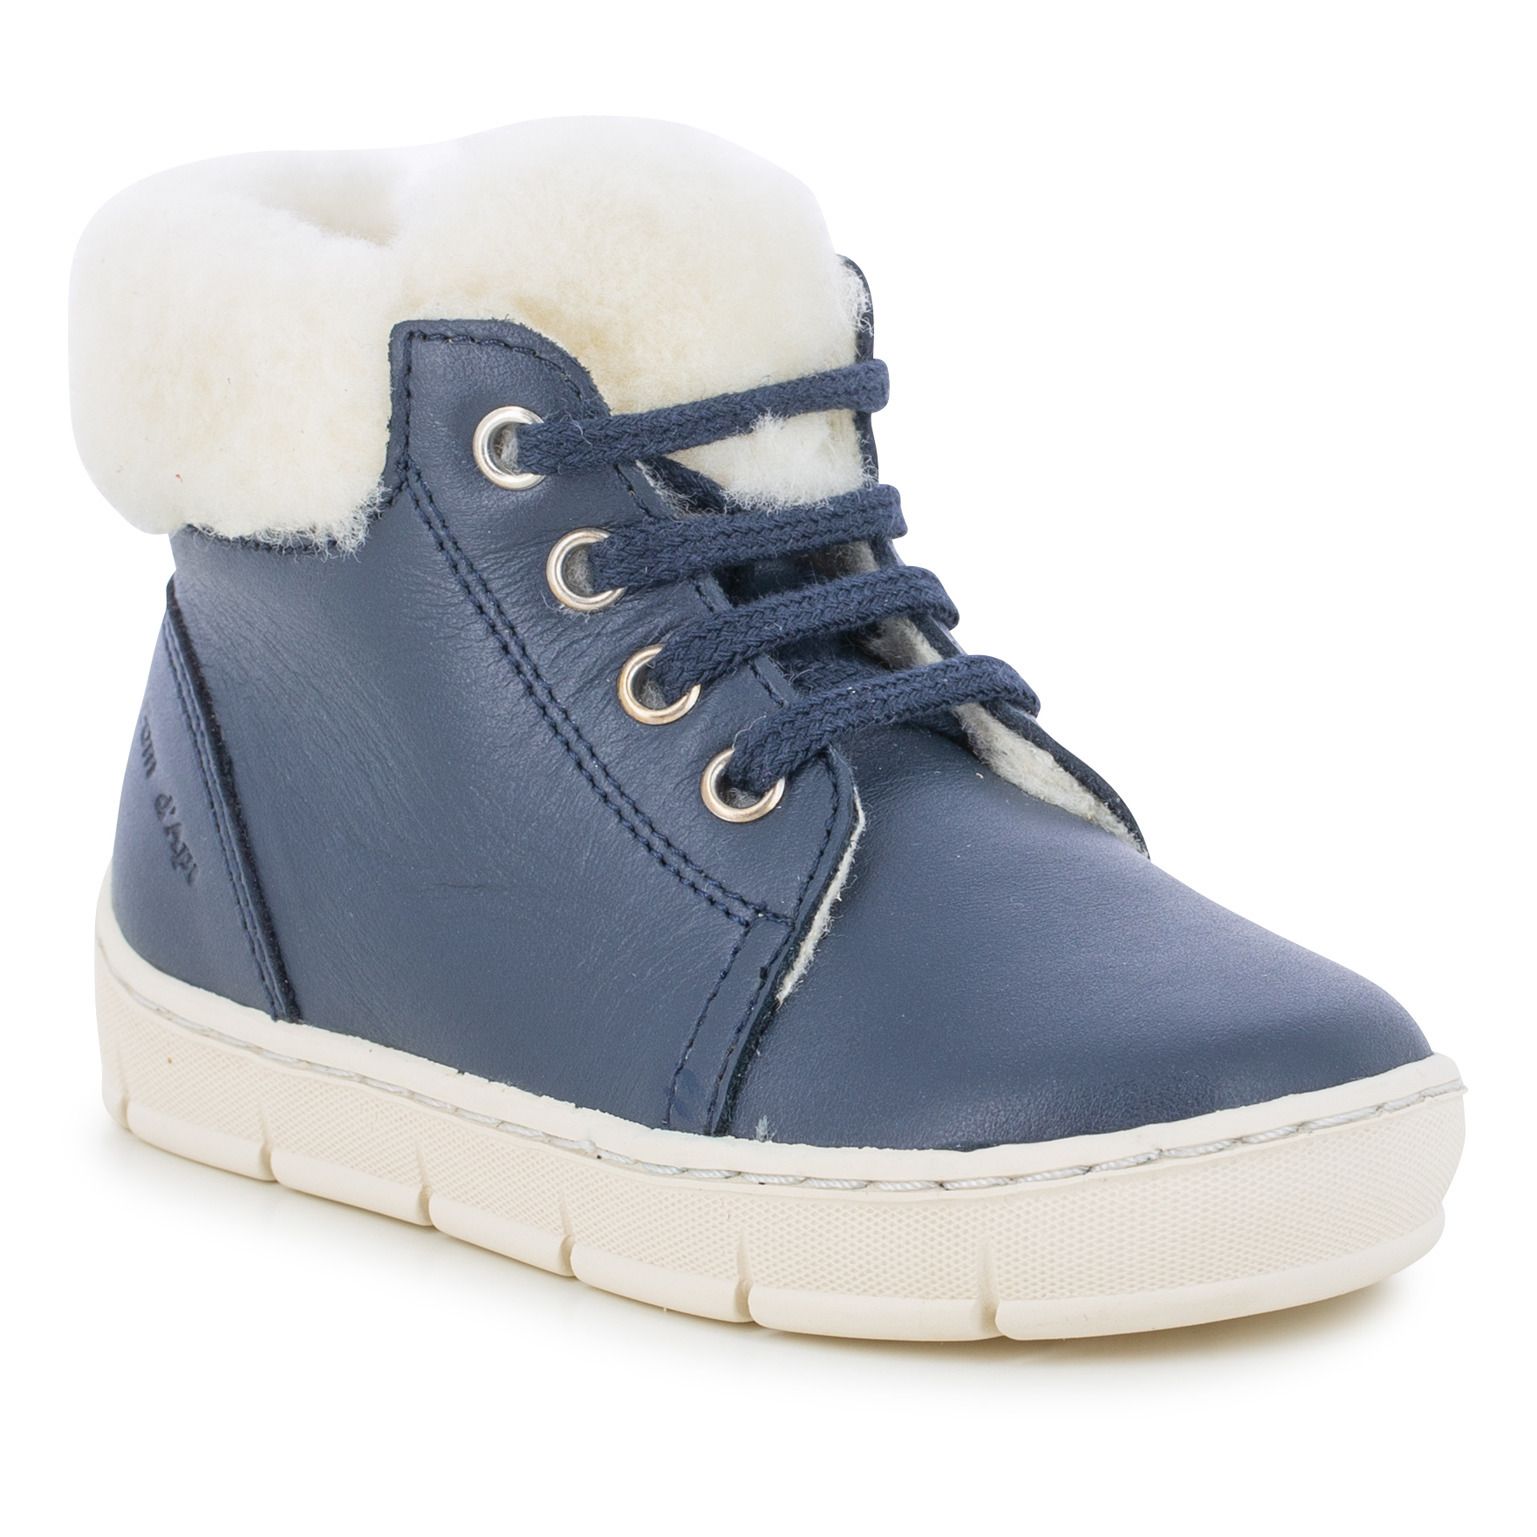 Zapatillas forradas Start Top Fur Azul Marino- Imagen del producto n°2